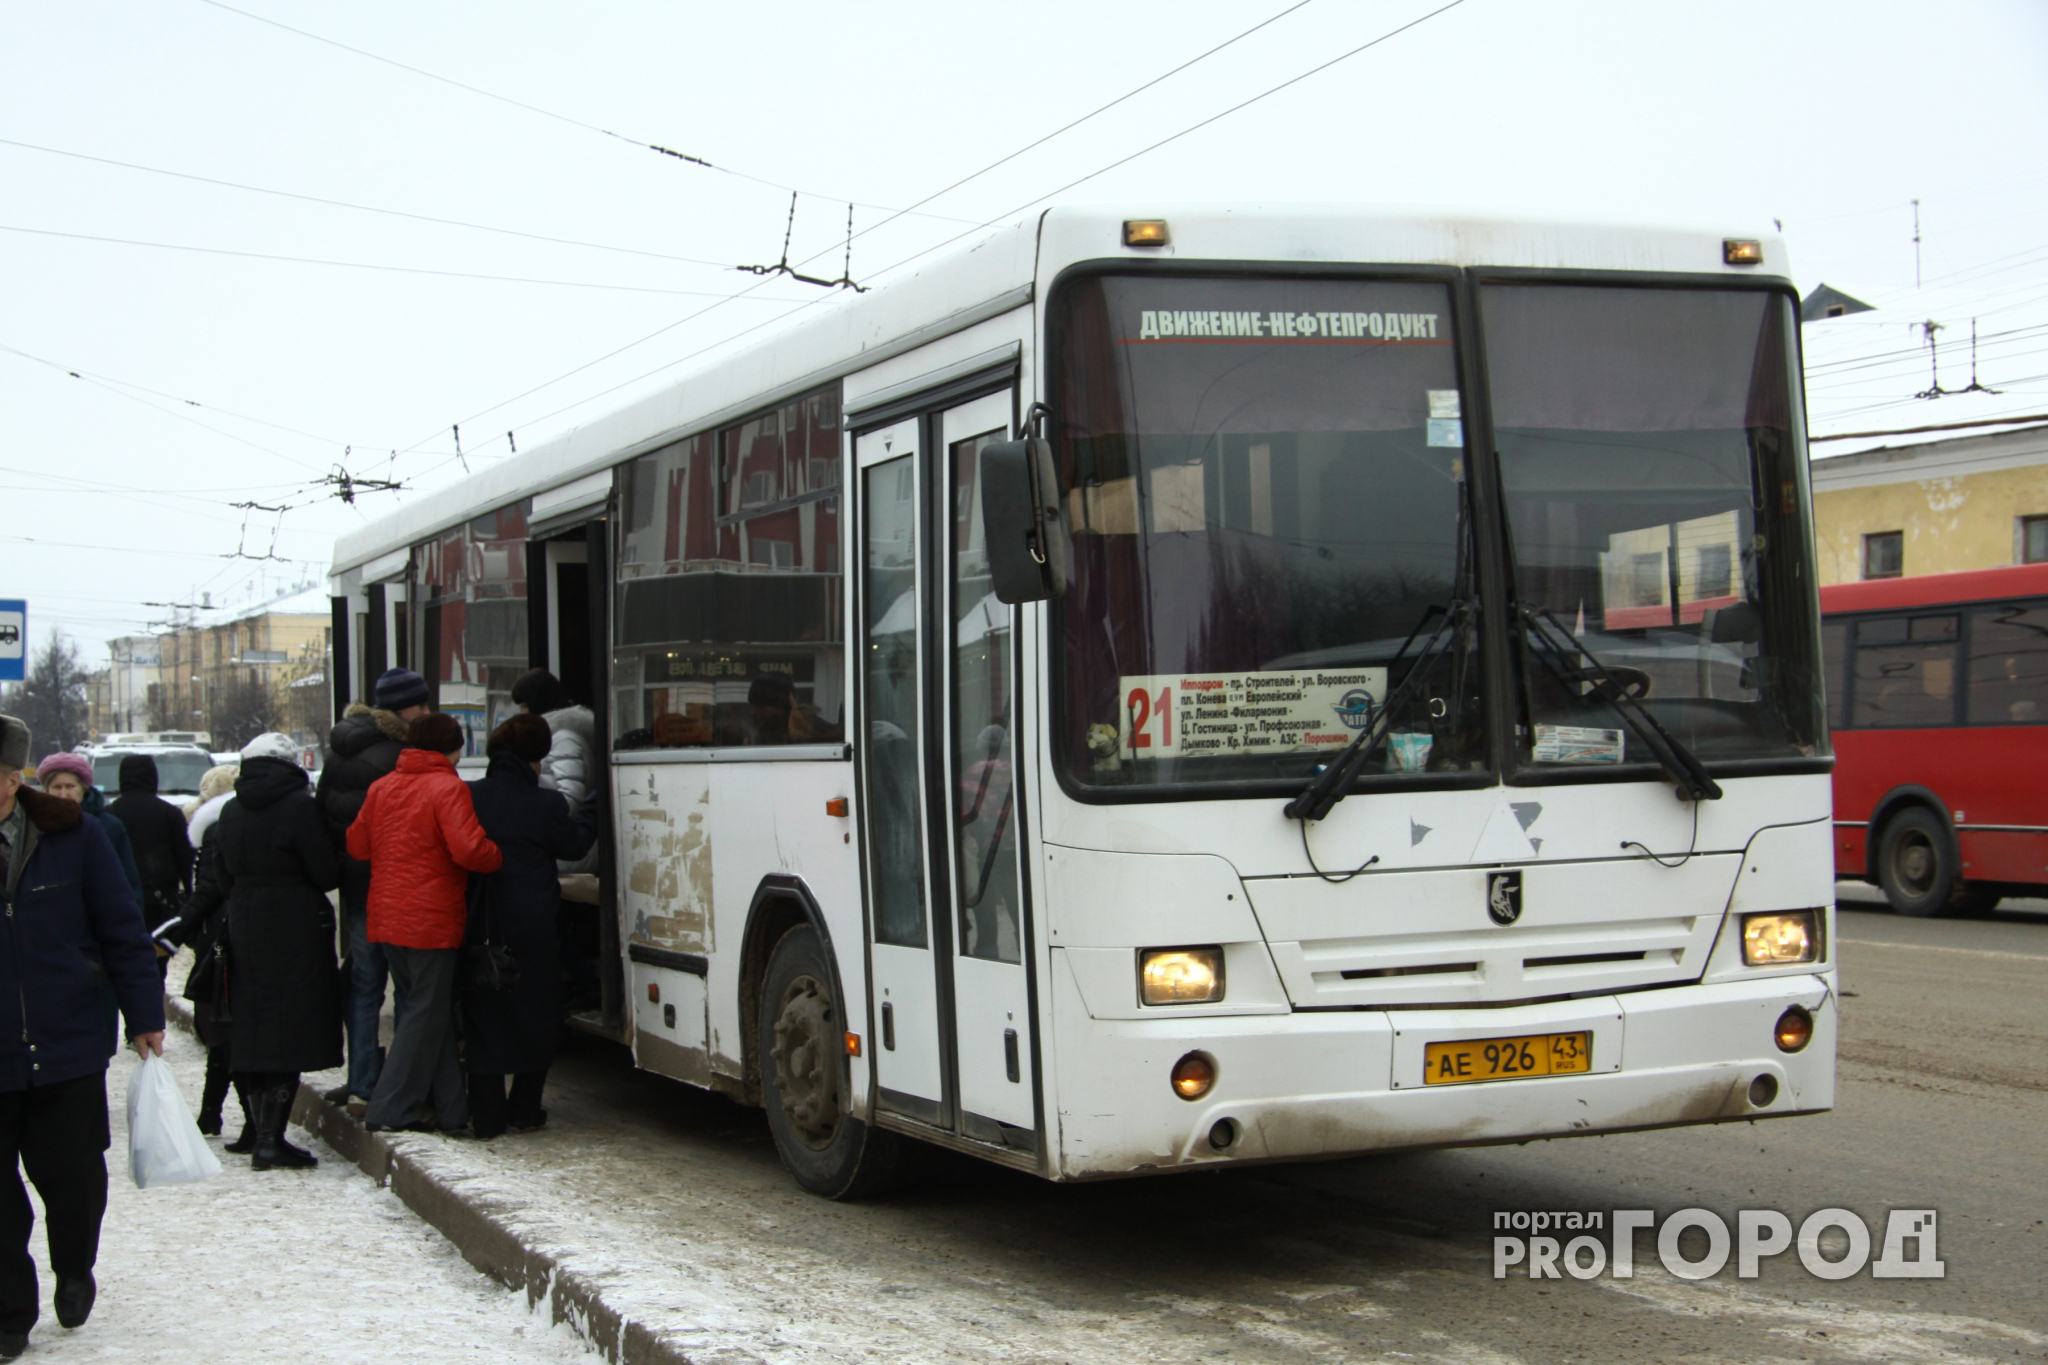 Перевозчики предлагают повысить цены на проезд в Кирове до 33 рублей